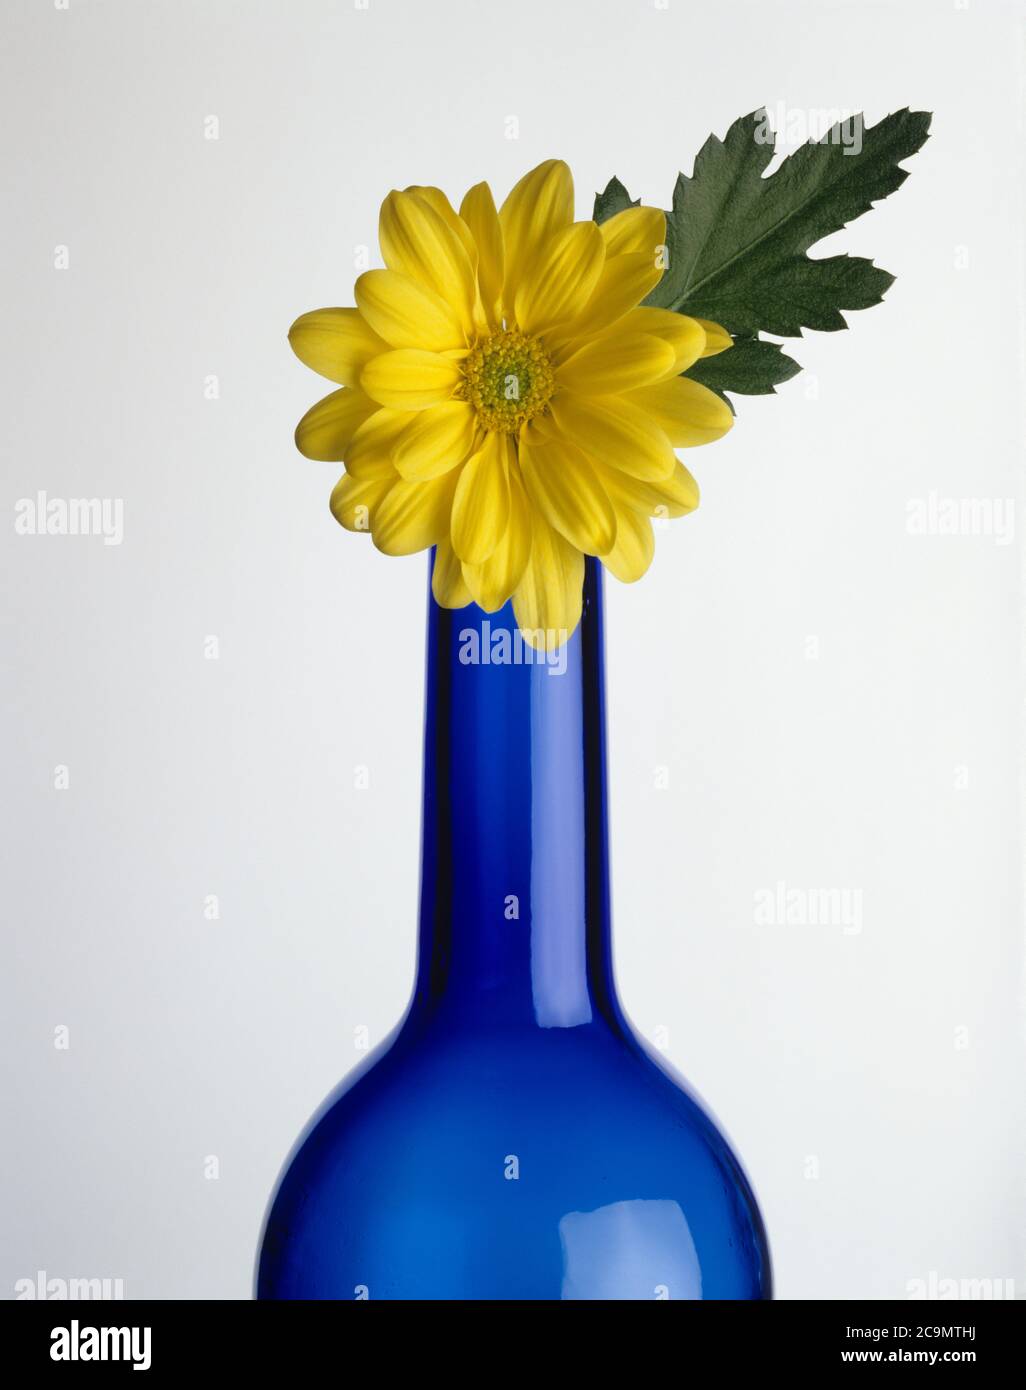 Fleur jaune et feuille verte sur le col de la bouteille en verre bleu sur fond blanc Banque D'Images